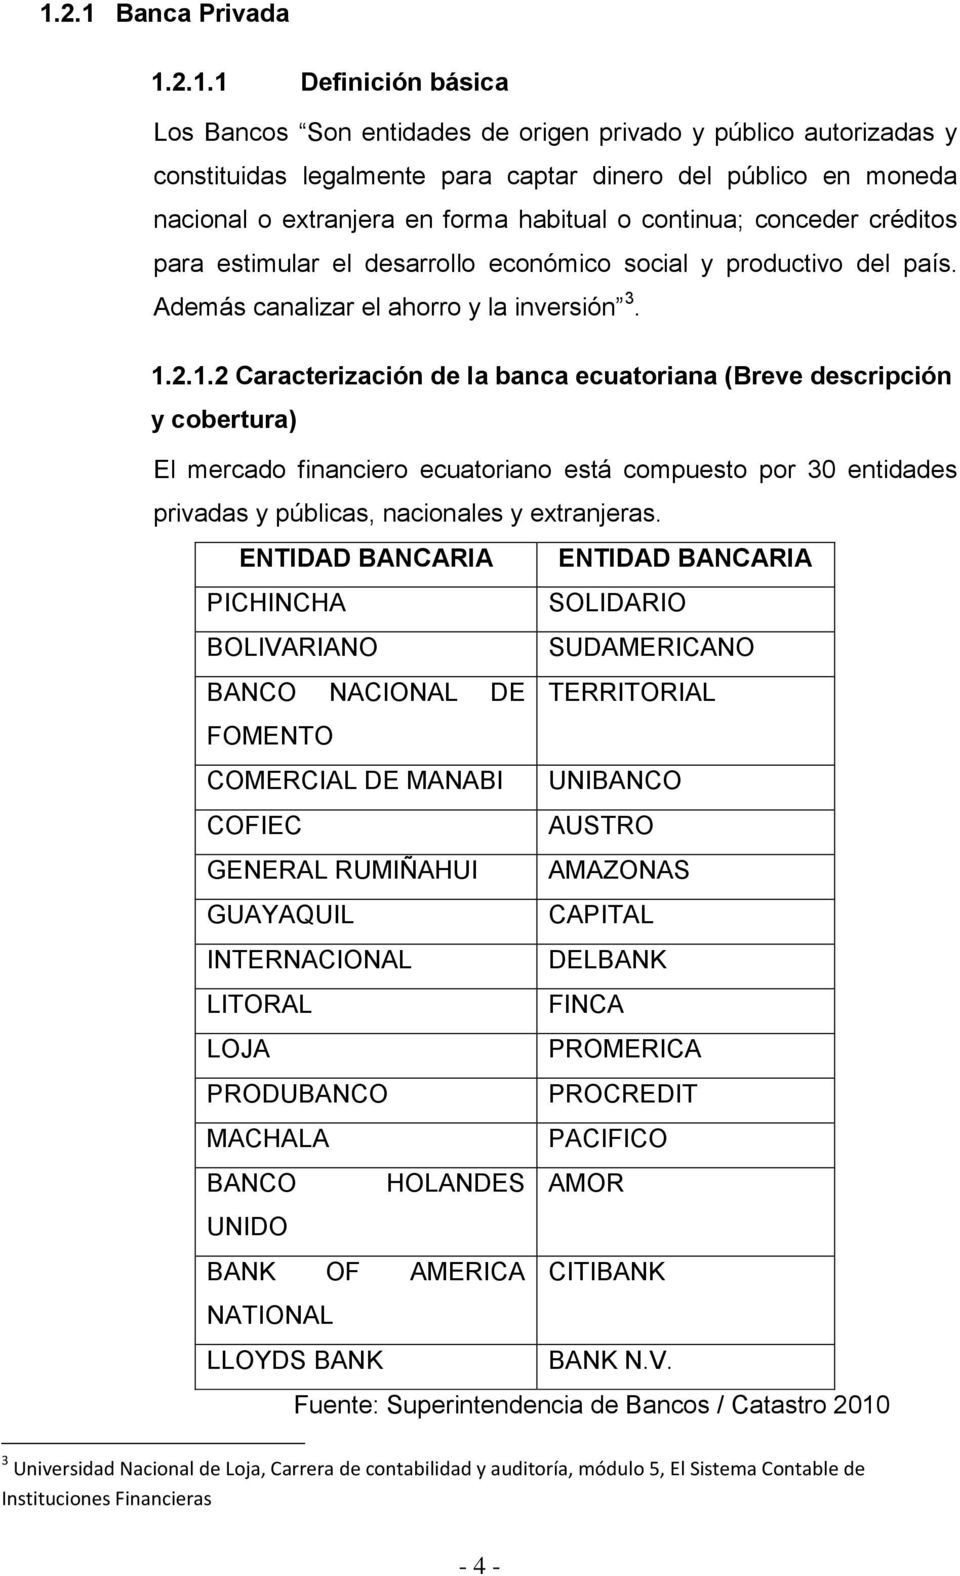 2.1.2 Caracterización de la banca ecuatoriana (Breve descripción y cobertura) El mercado financiero ecuatoriano está compuesto por 30 entidades privadas y públicas, nacionales y extranjeras.